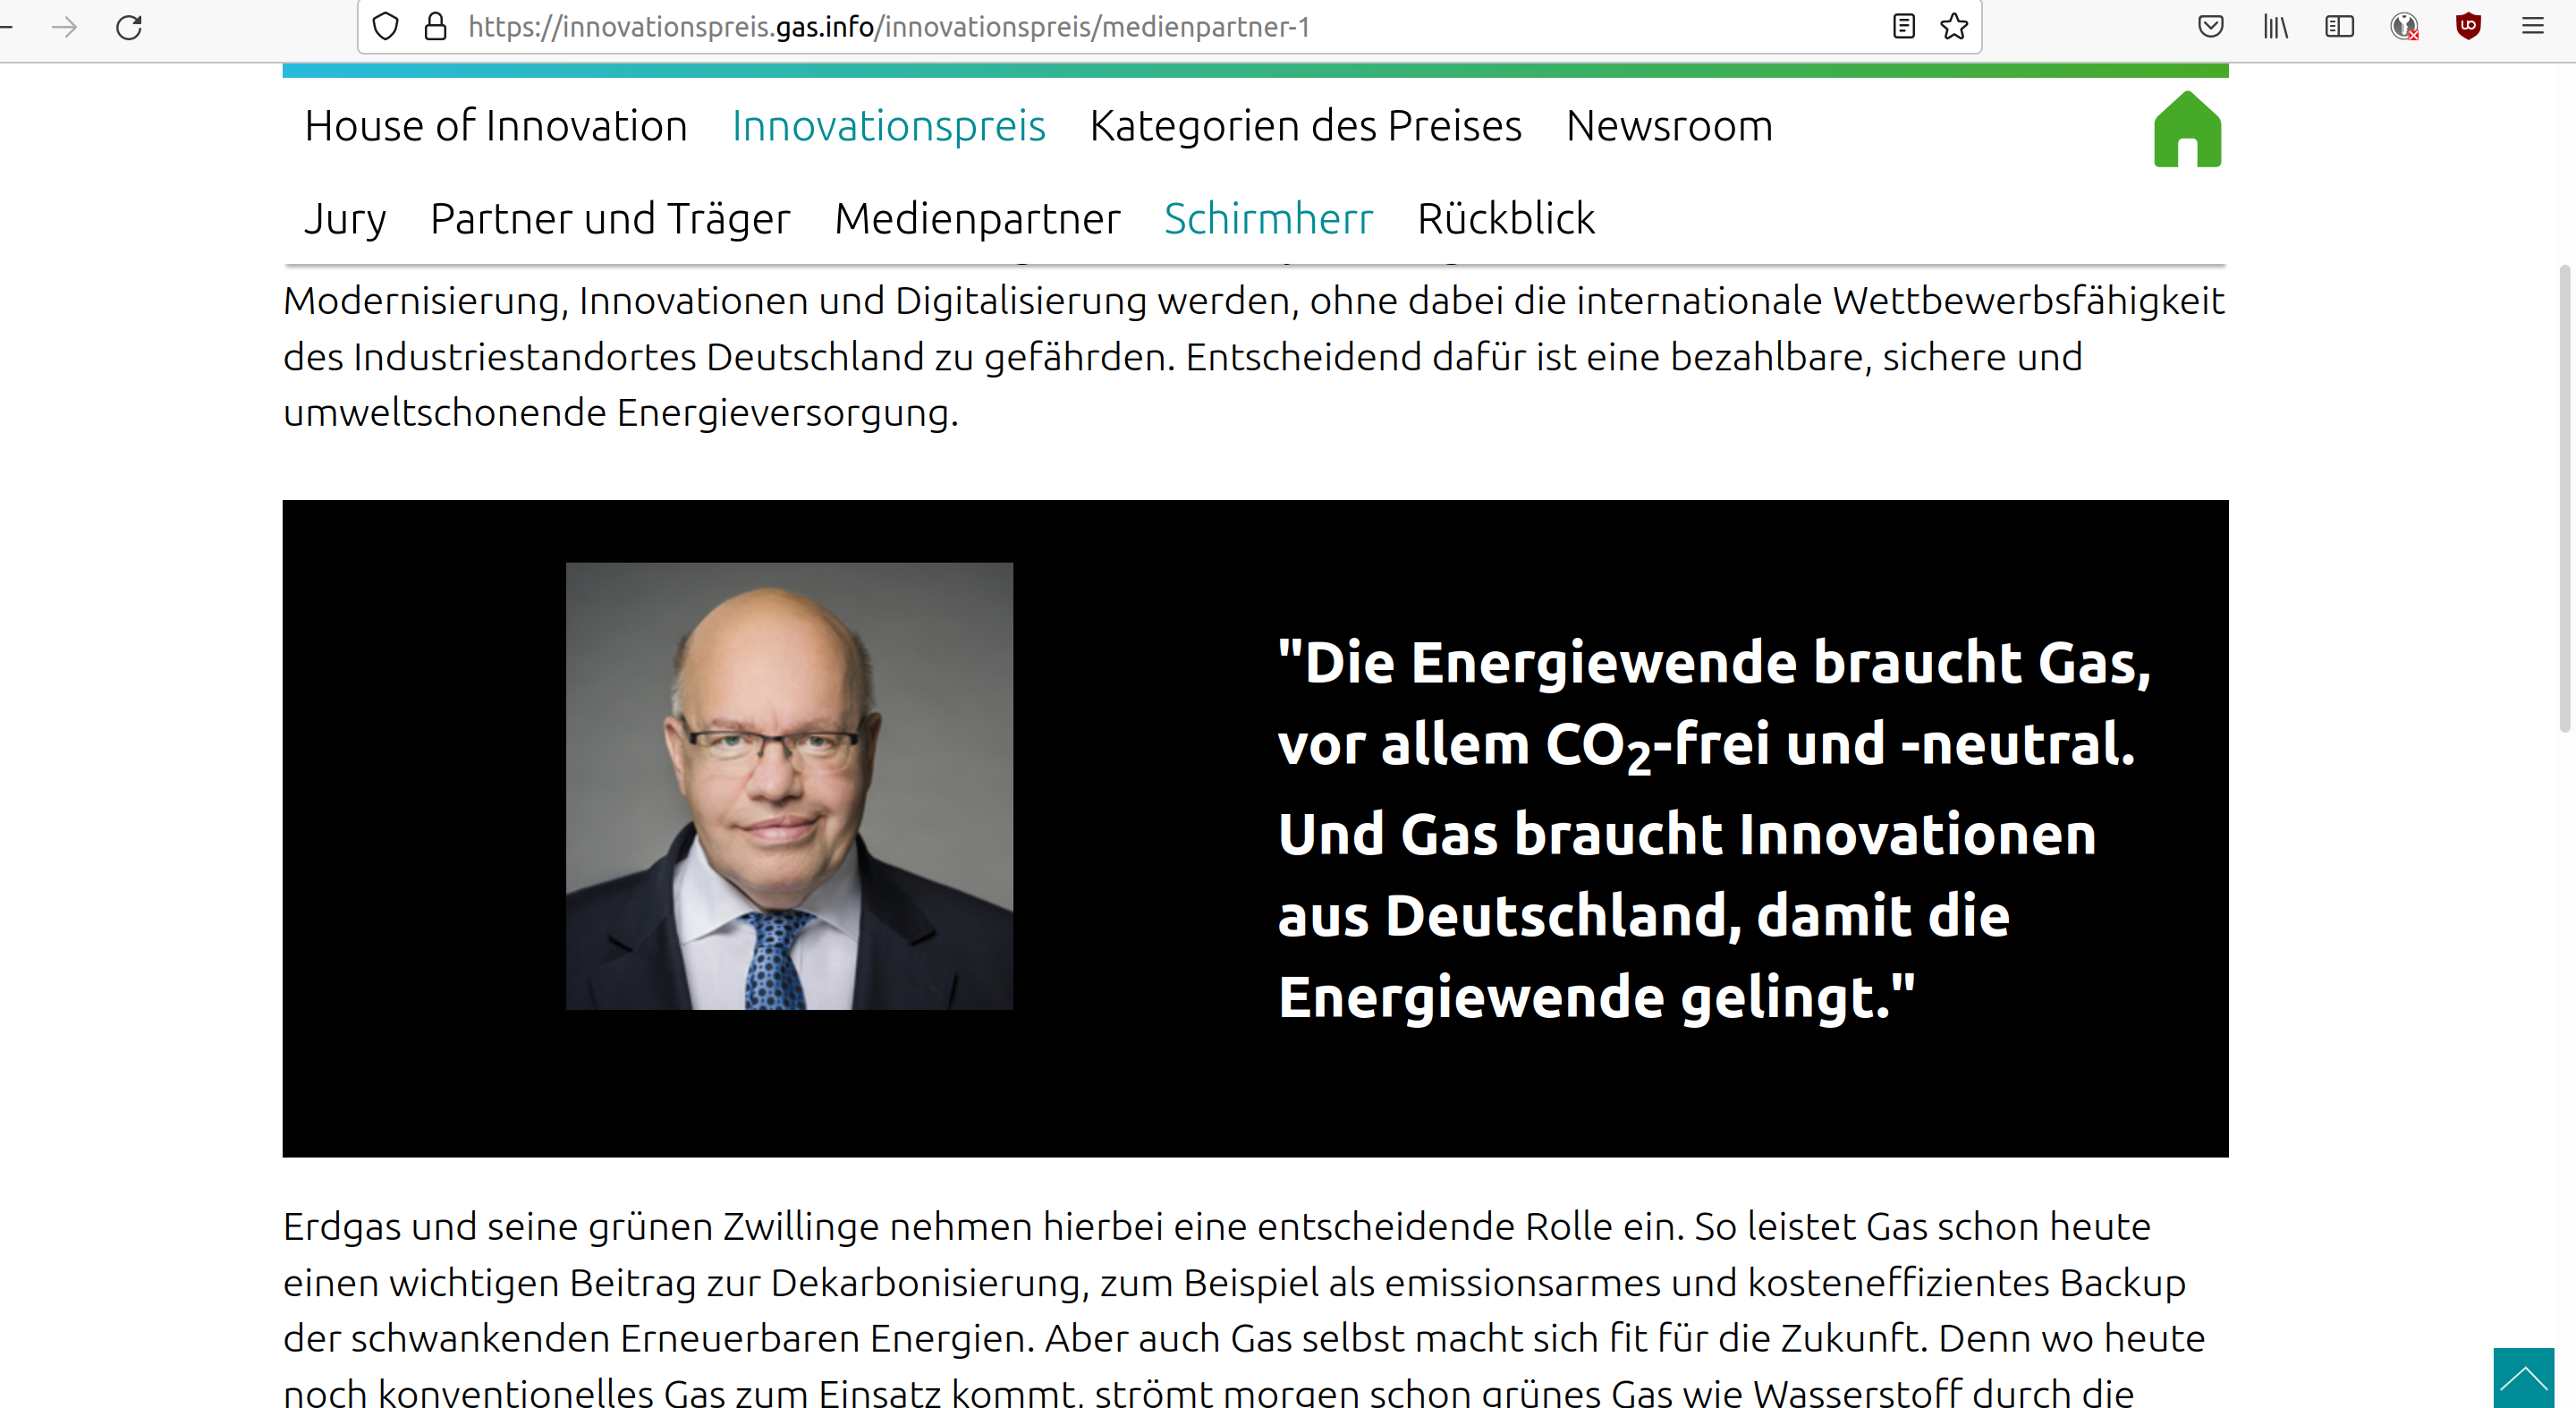 Screenshot der Webseite: innovationspreis.gas.info mit einem Foto von Peter Altmaier und dem Zitat "Die Energiewende braucht Gas, vor allem CO2-frei und -neutral. Und gas braucht Innovationen aus Deutschland, damit die Energiewende gelingt."